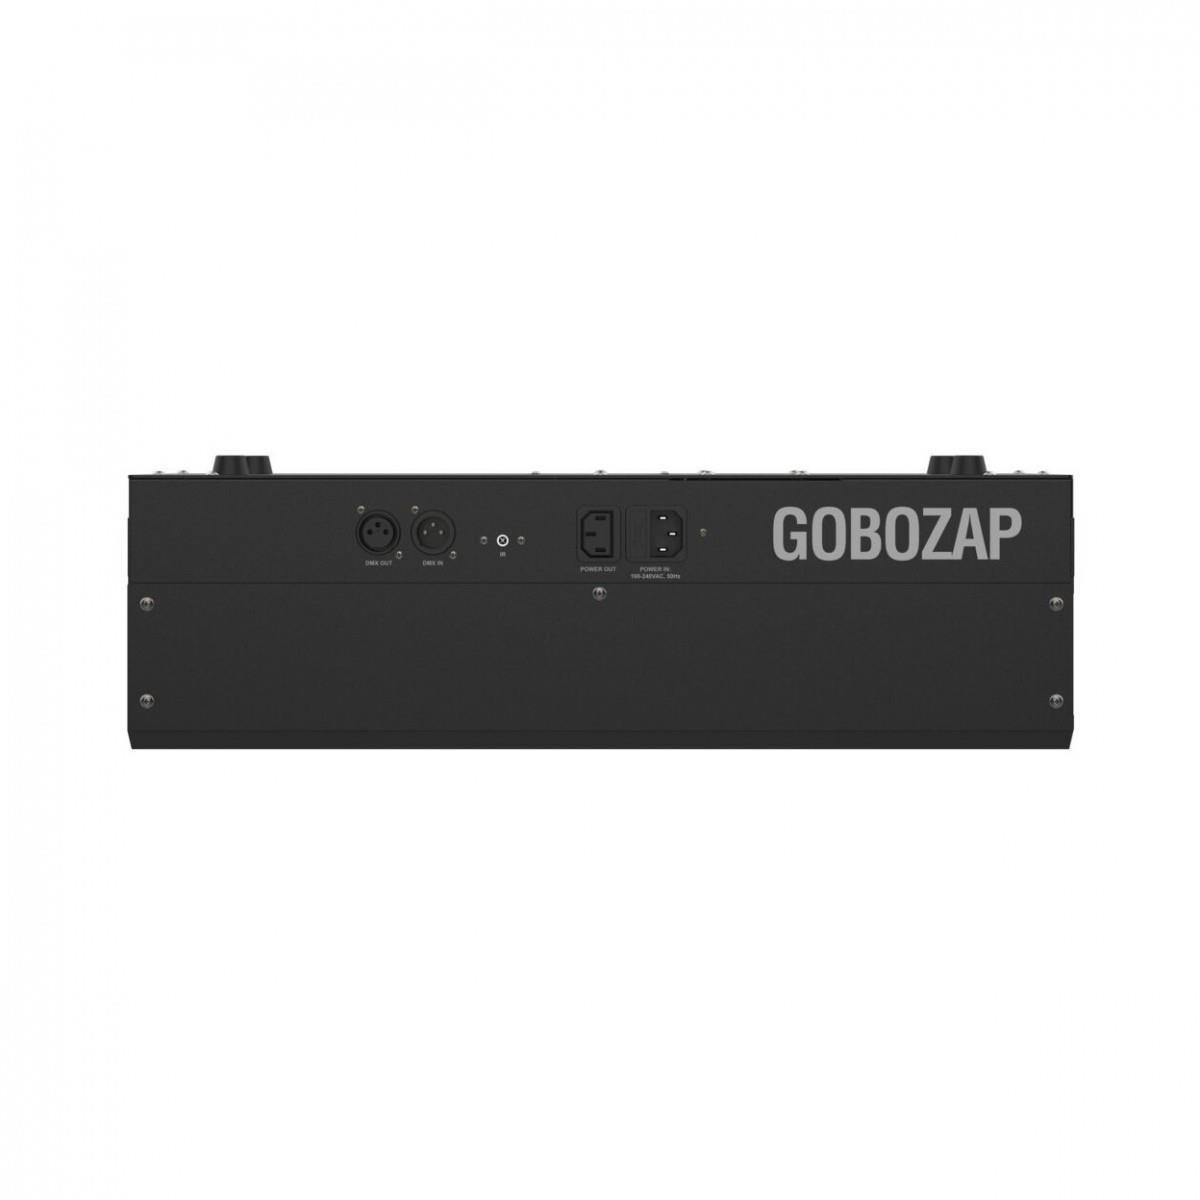 Chauvet Gobozap LED Barrel Scanner - DY Pro Audio